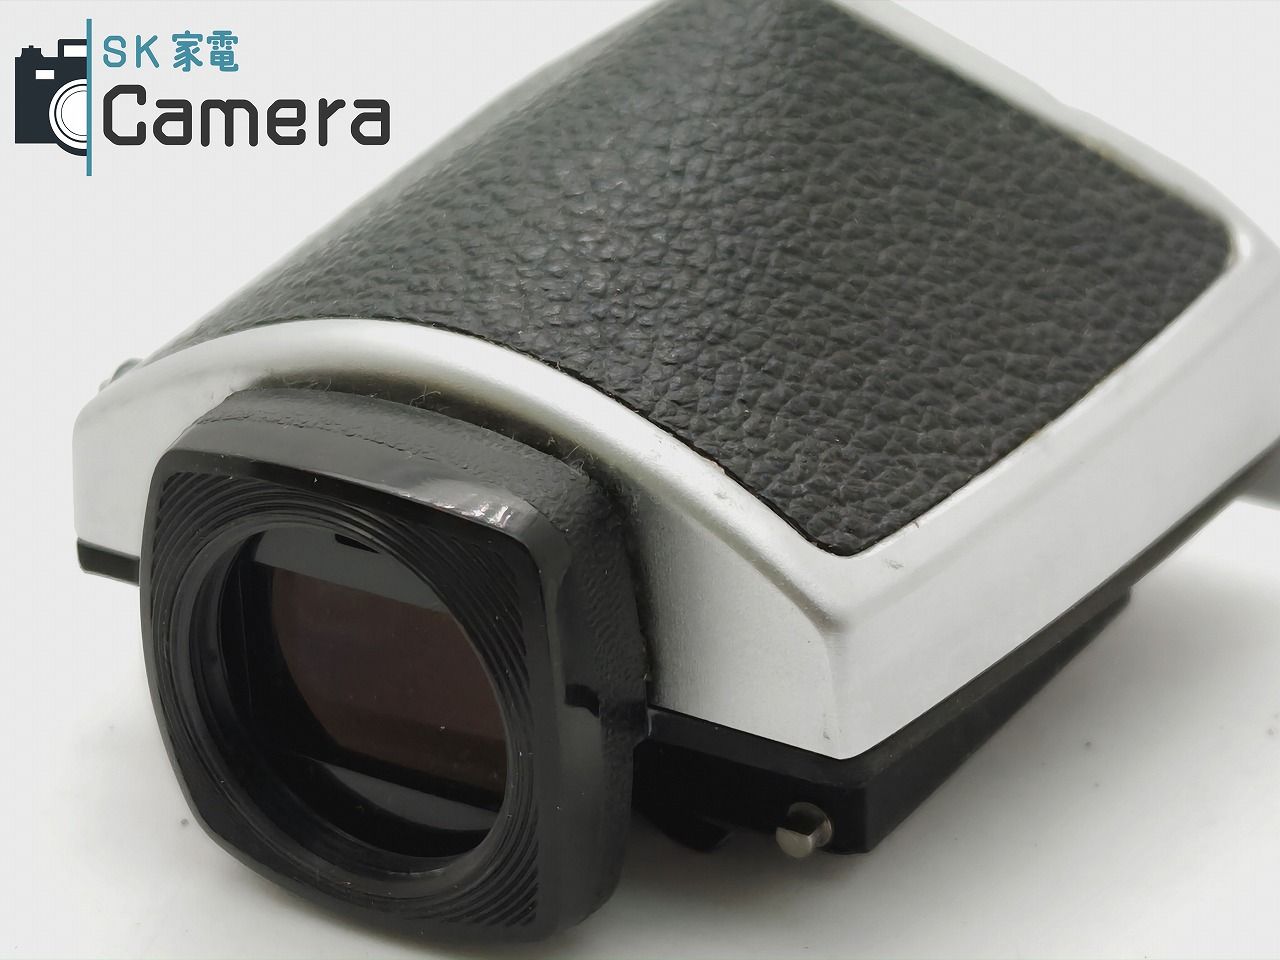 Nikon F2 ニコン アイレベルファインダー フォトミックA - フィルムカメラ